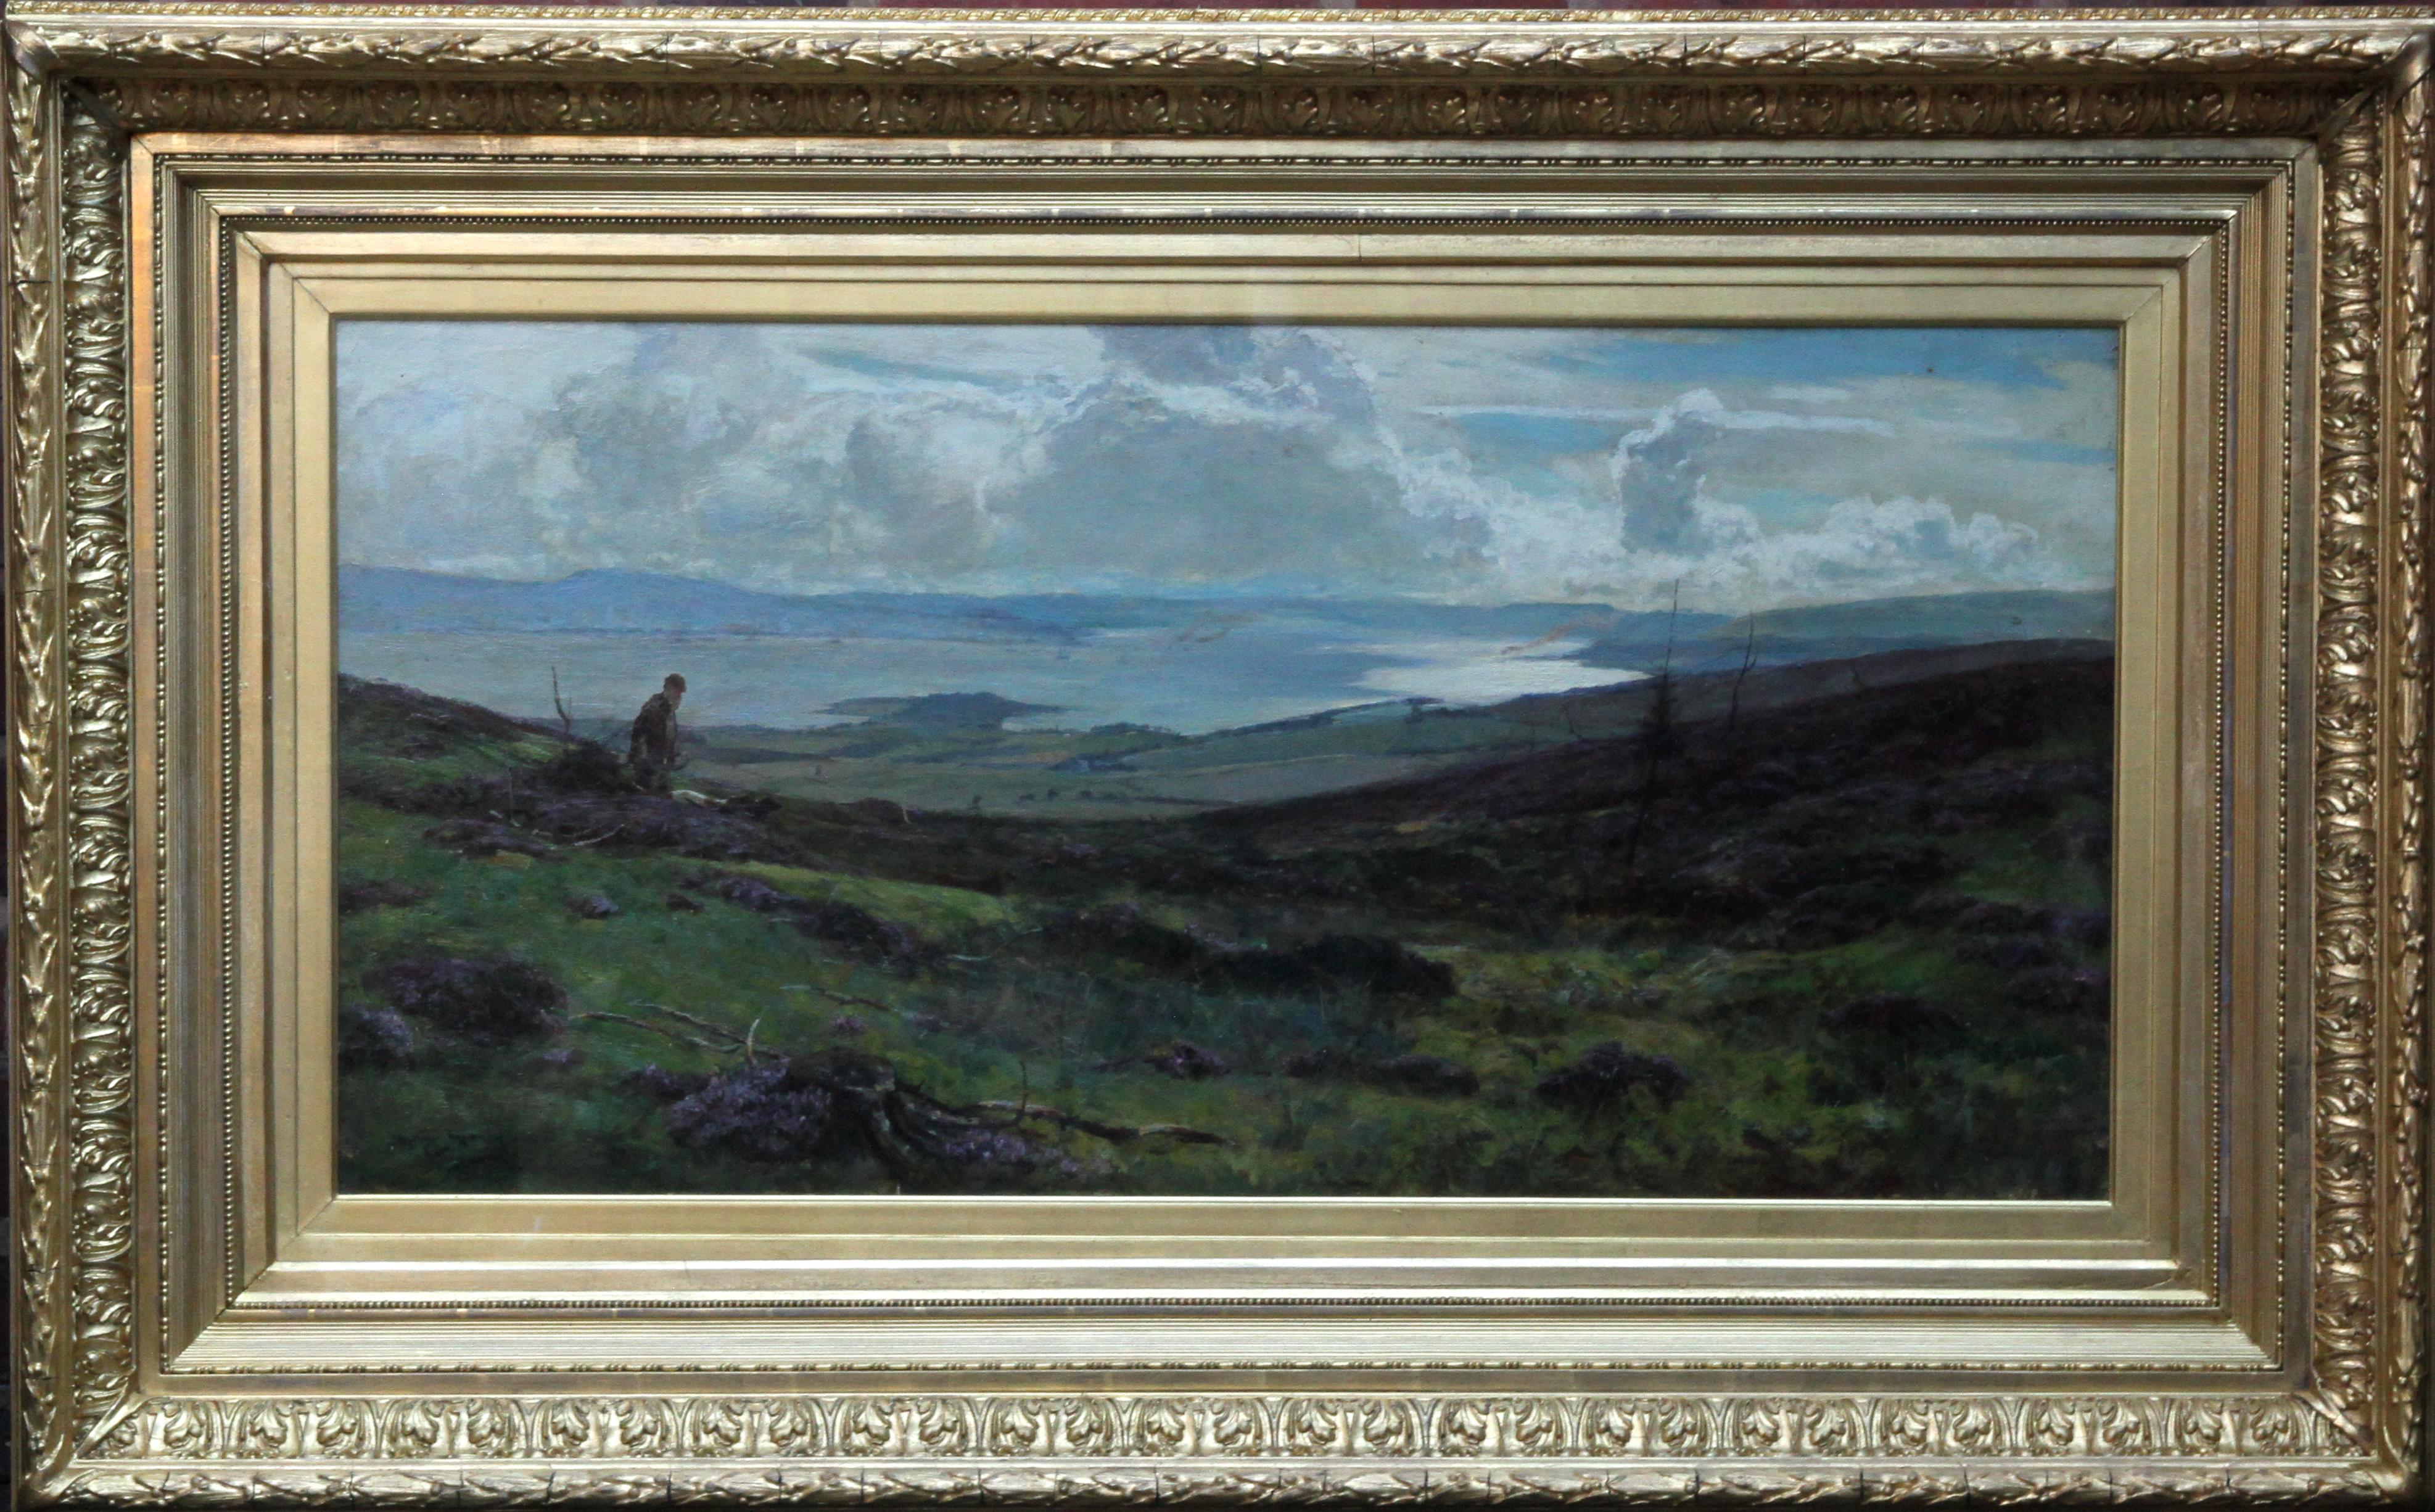 Landscape Painting Sir David Murray - Le contreplaqué de Darleith Moor au-dessus de Cardross - Paysage victorien écossais